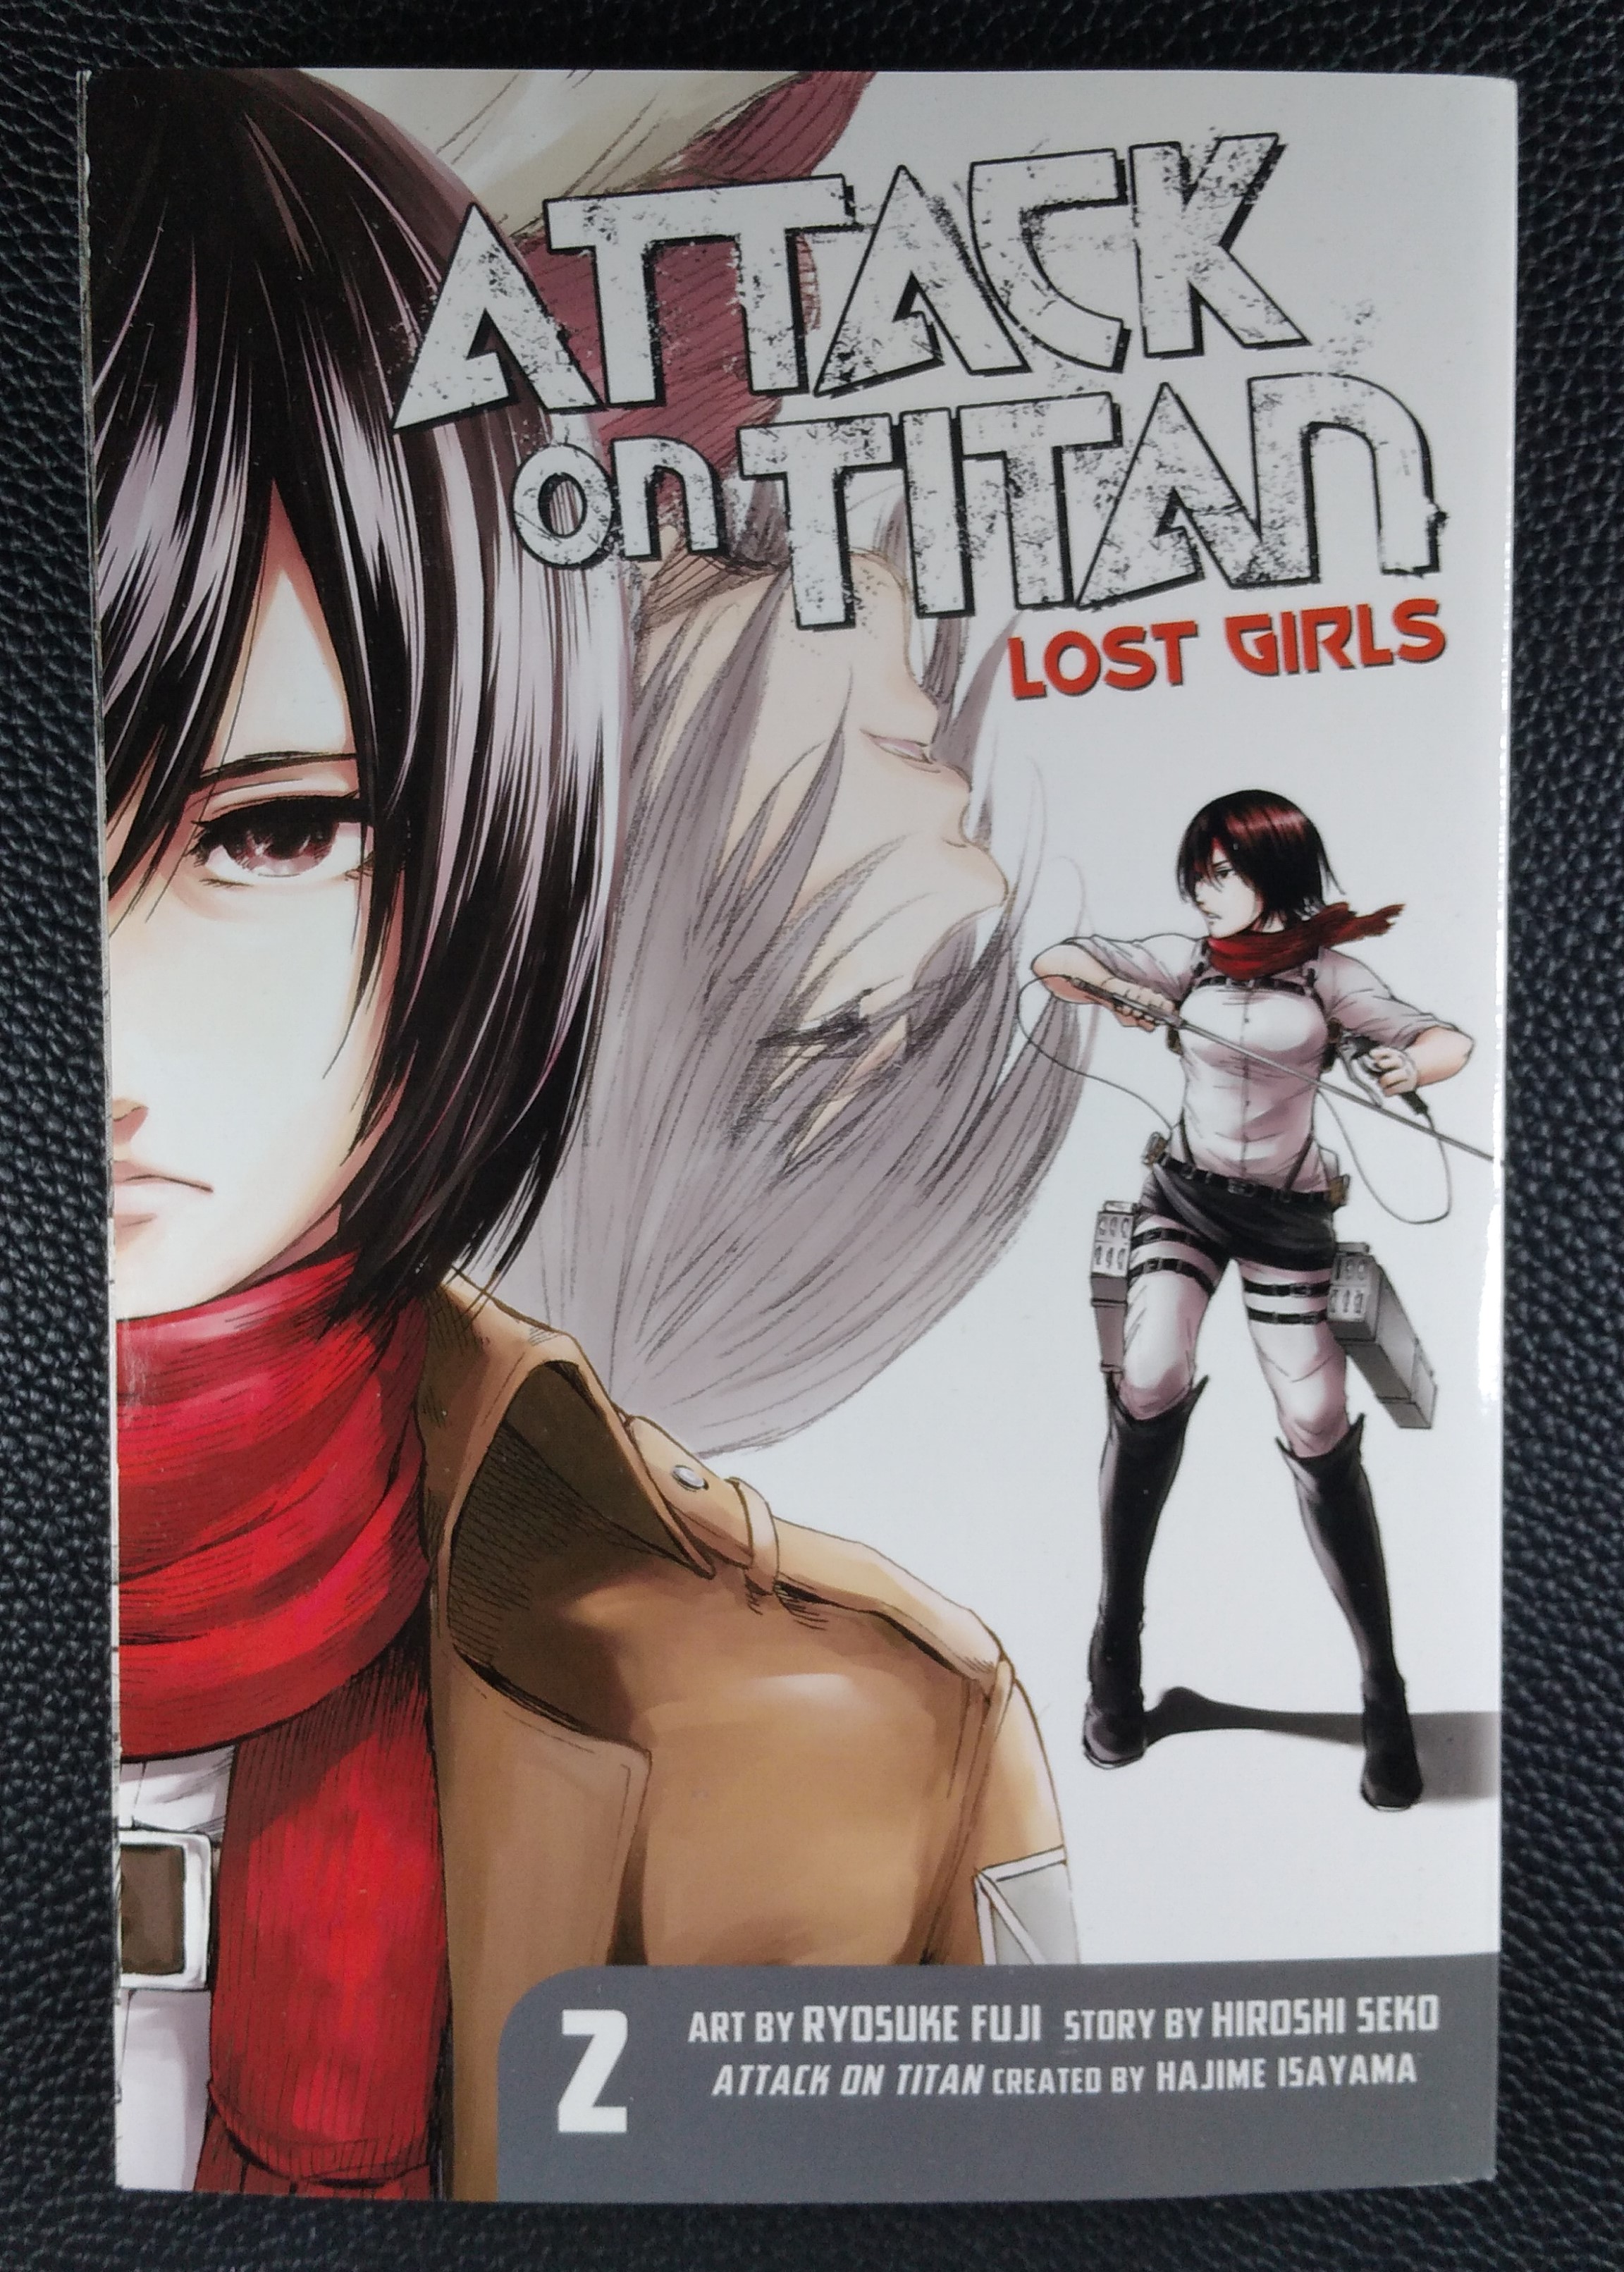 Ataque dos Titãs: Lost Girls Vol. 2